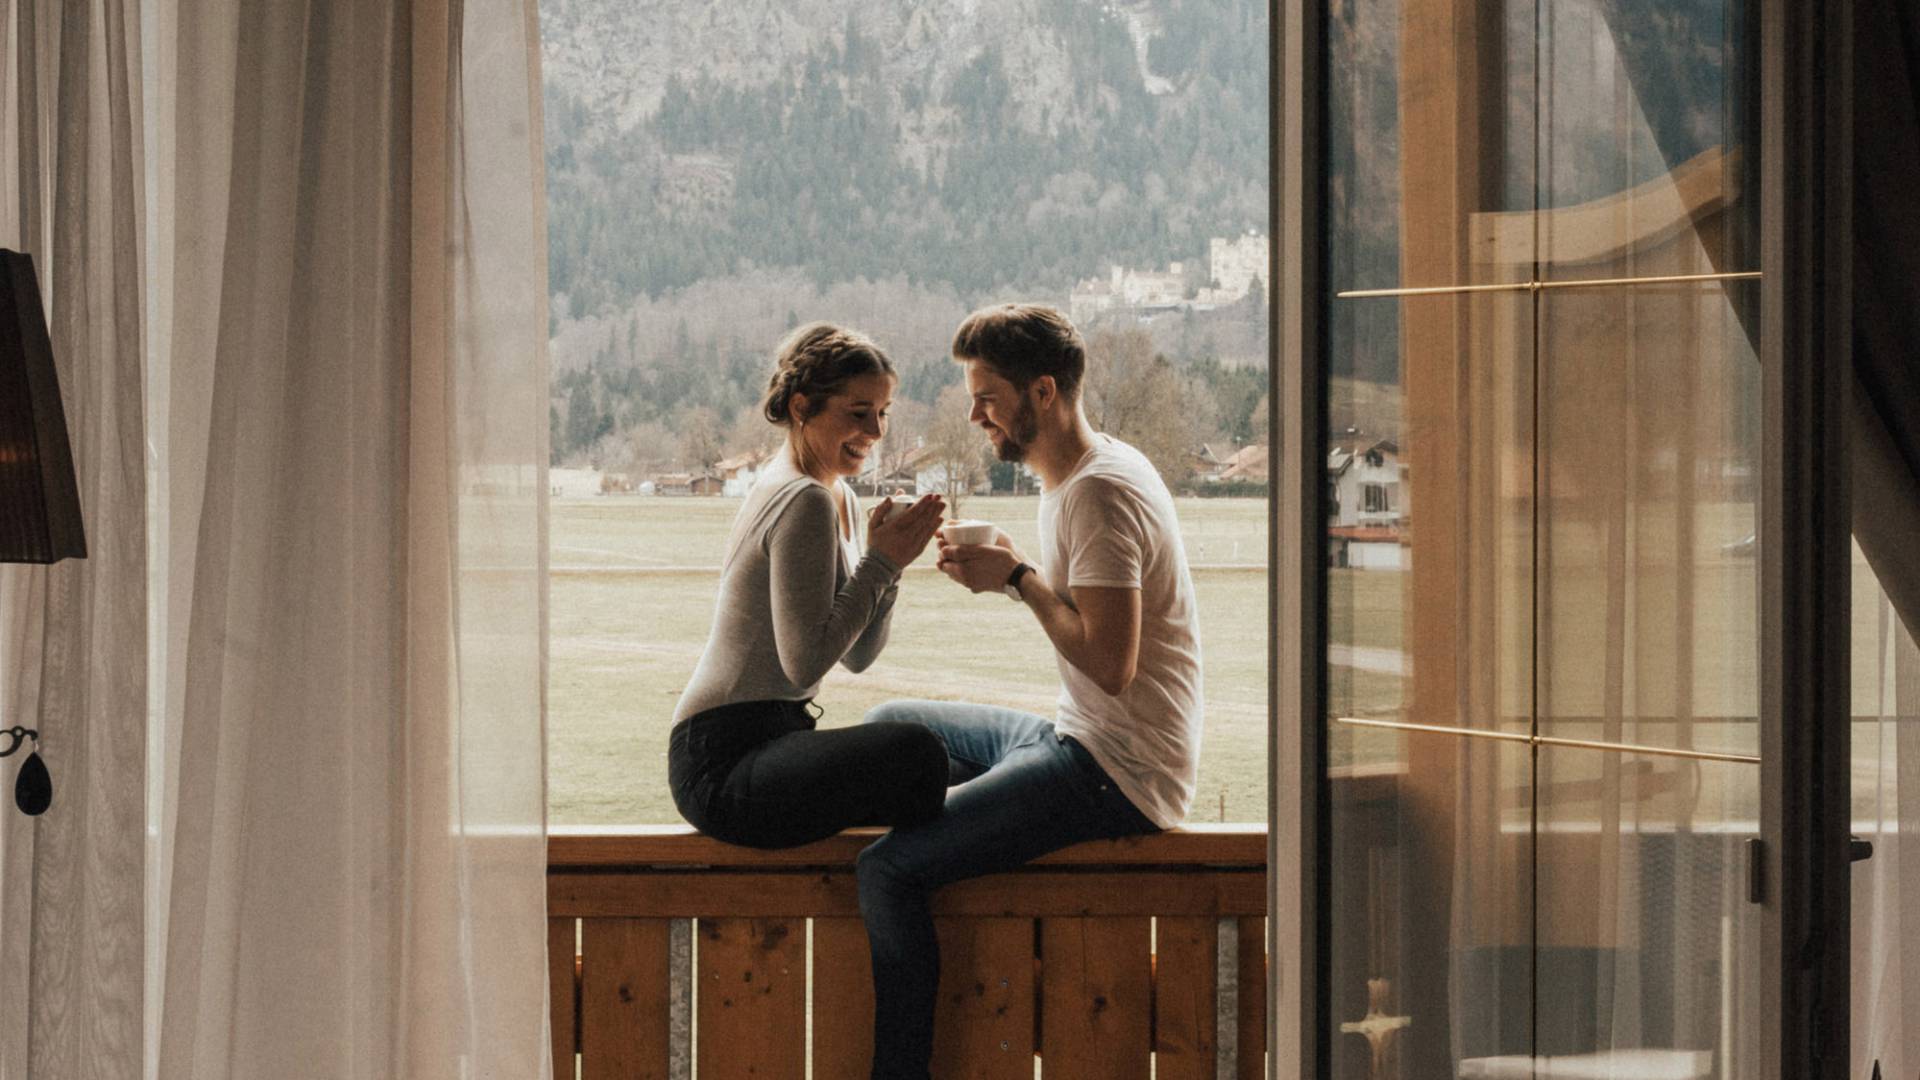 Romantikurlaub mit Blick auf Neuschwanstein - Urlaubsideen für Verliebte  